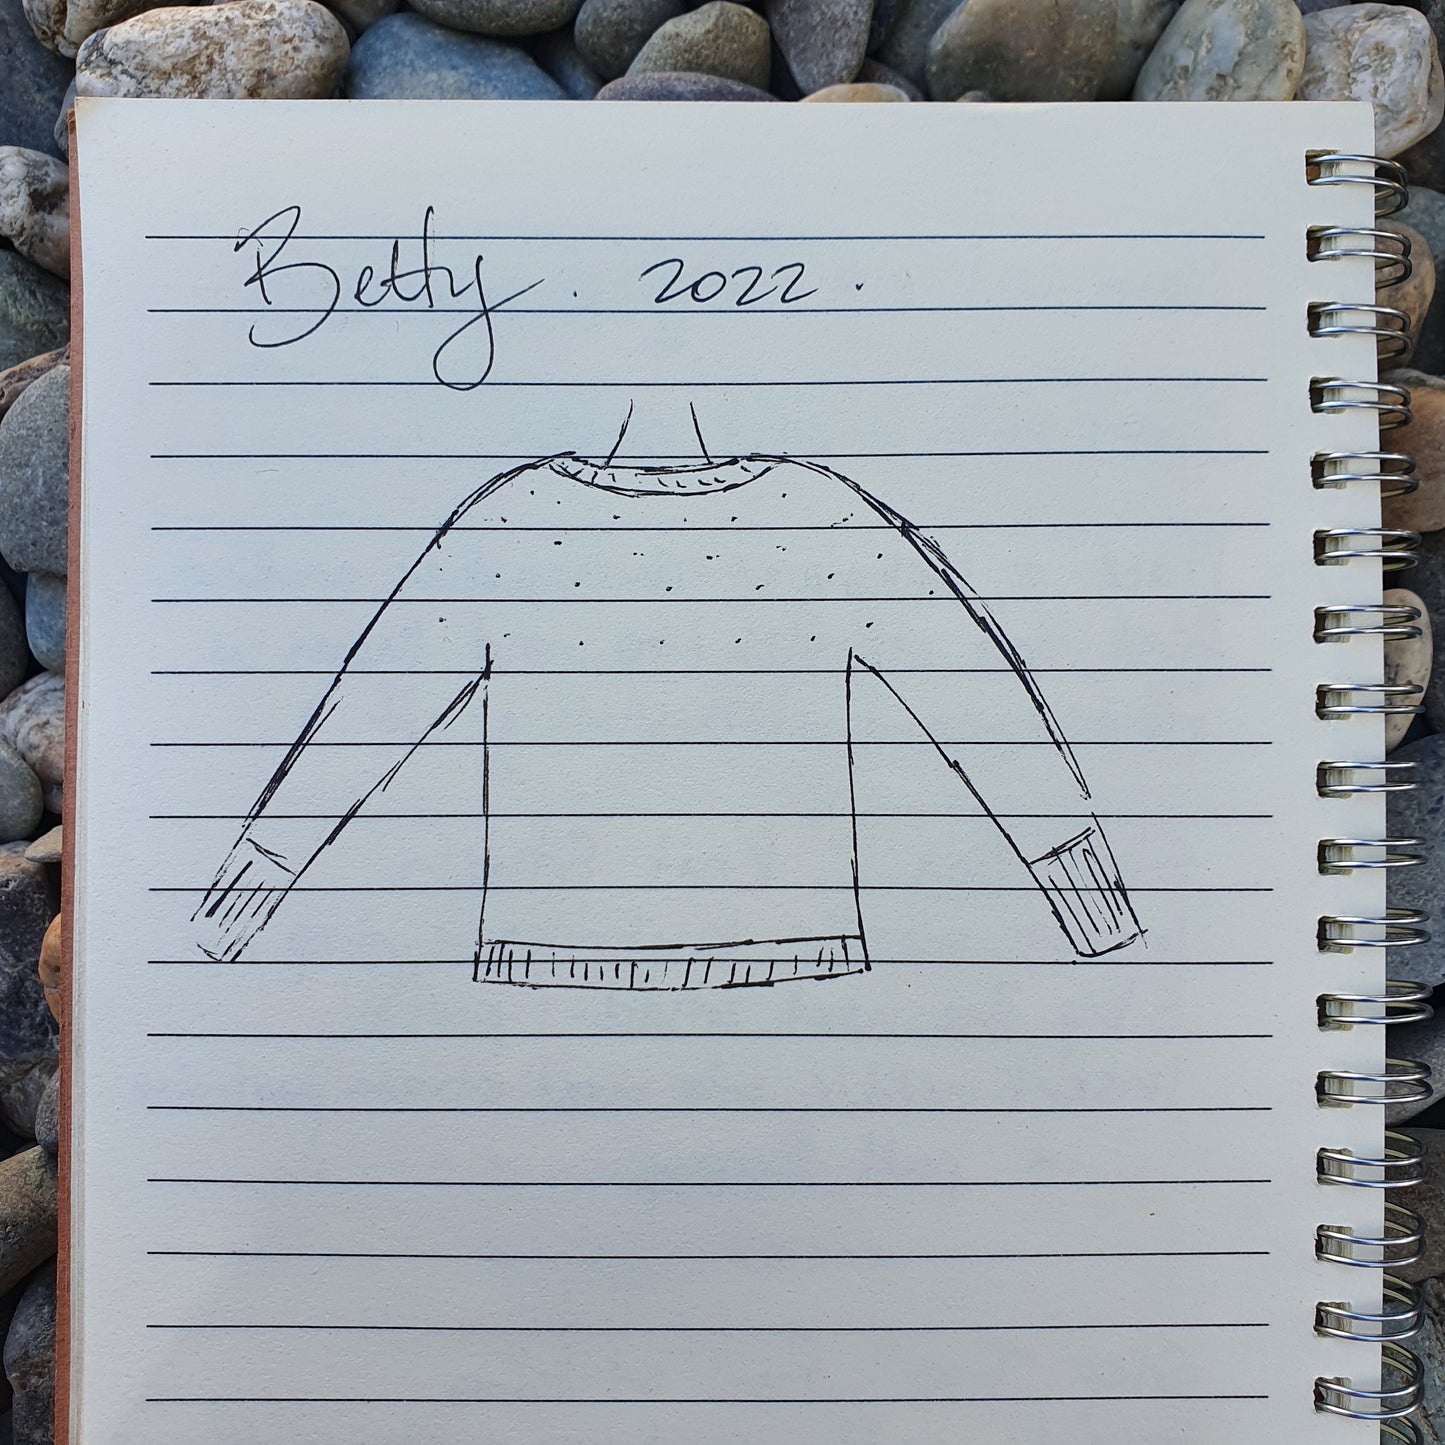 Betty Sweater Knit Pattern